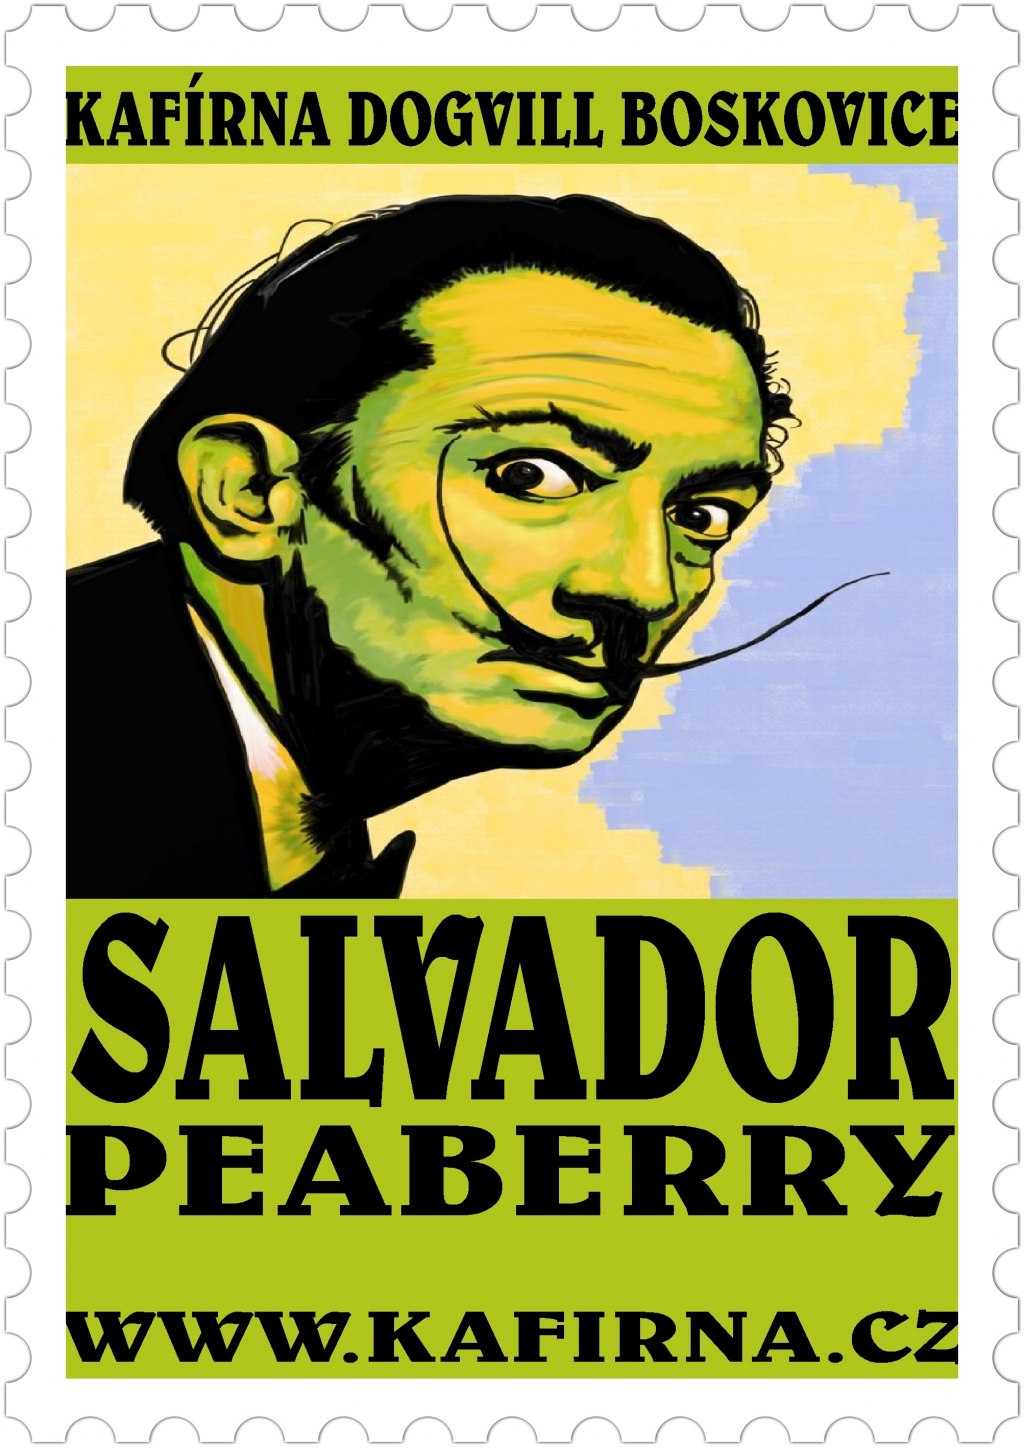 SALVADOR Peaberry